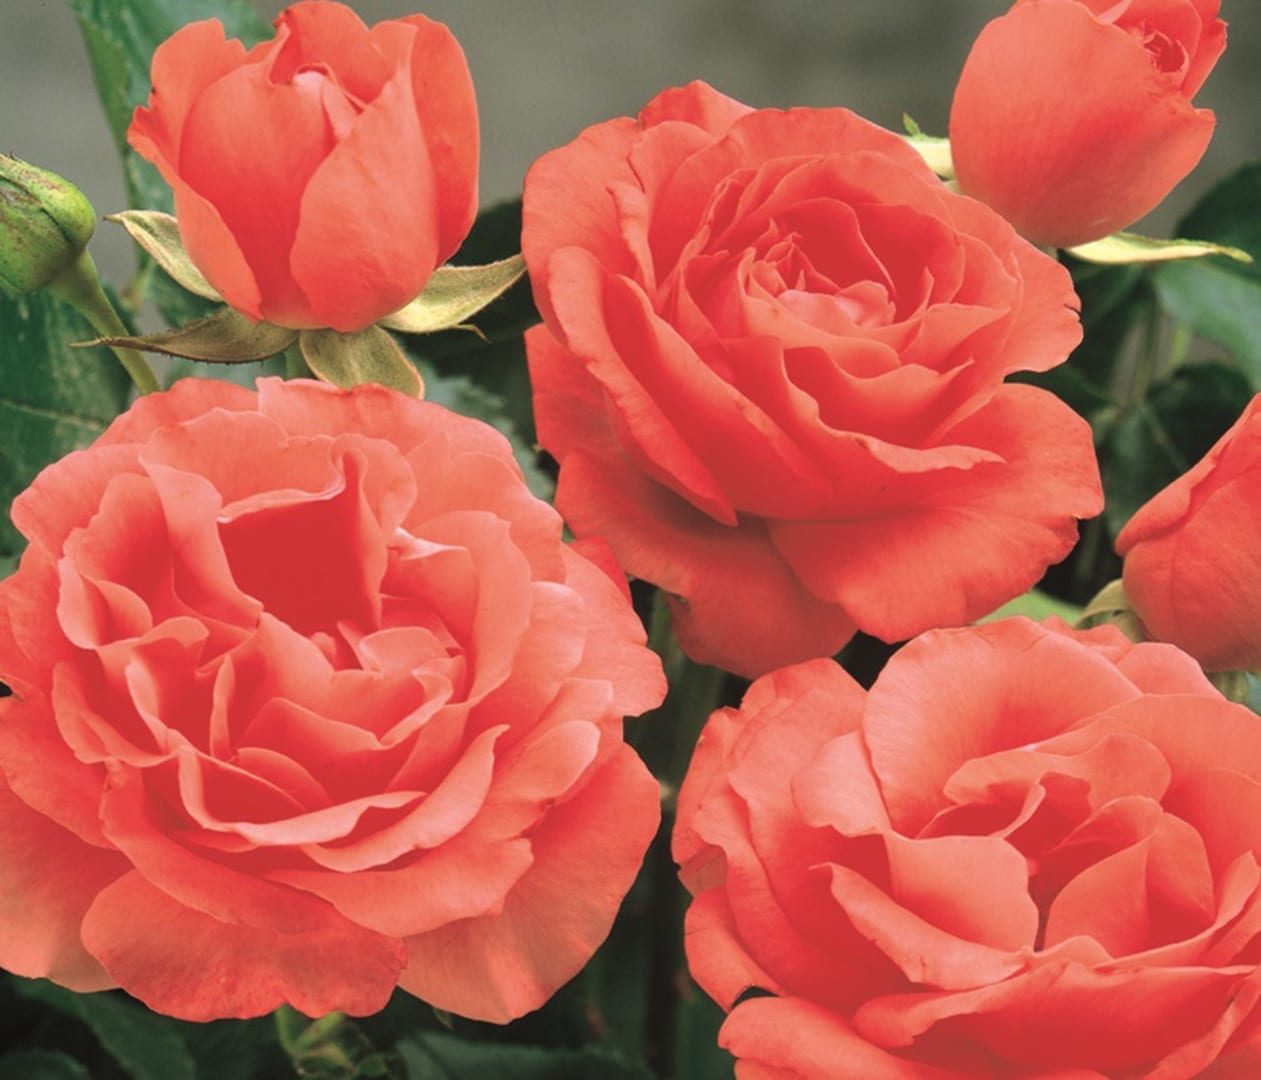 Саженец кустовой розы Marmalade Skies (Мармалад Скайс)